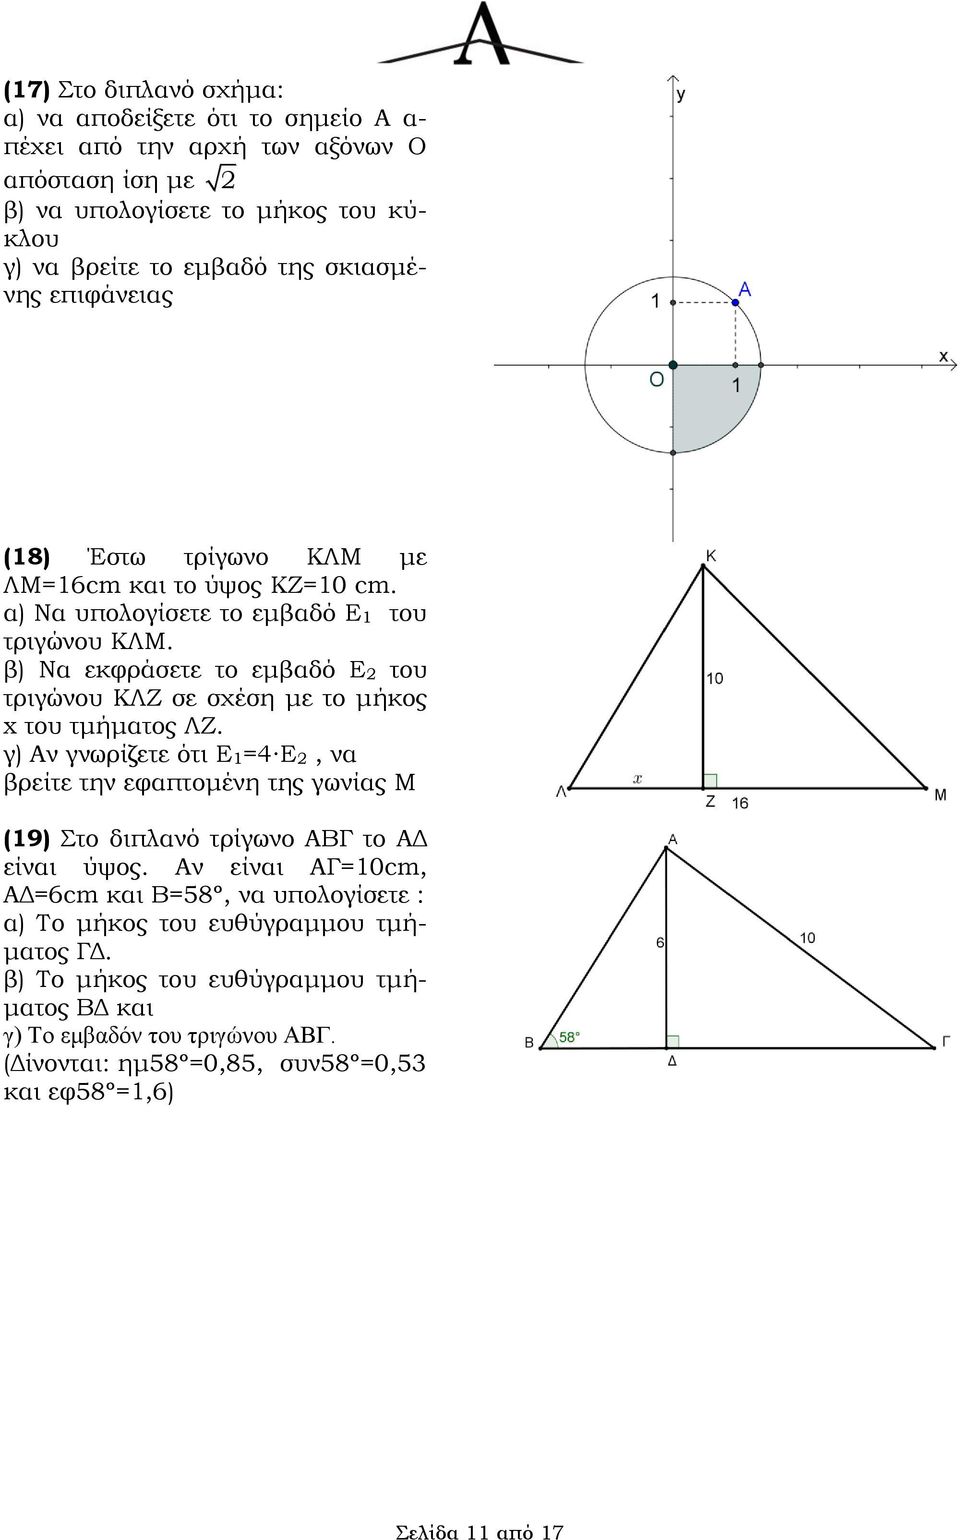 β) Να εκφράσετε το εμβαδό Ε του τριγώνου ΚΛΖ σε σχέση με το μήκος x του τμήματος ΛΖ.